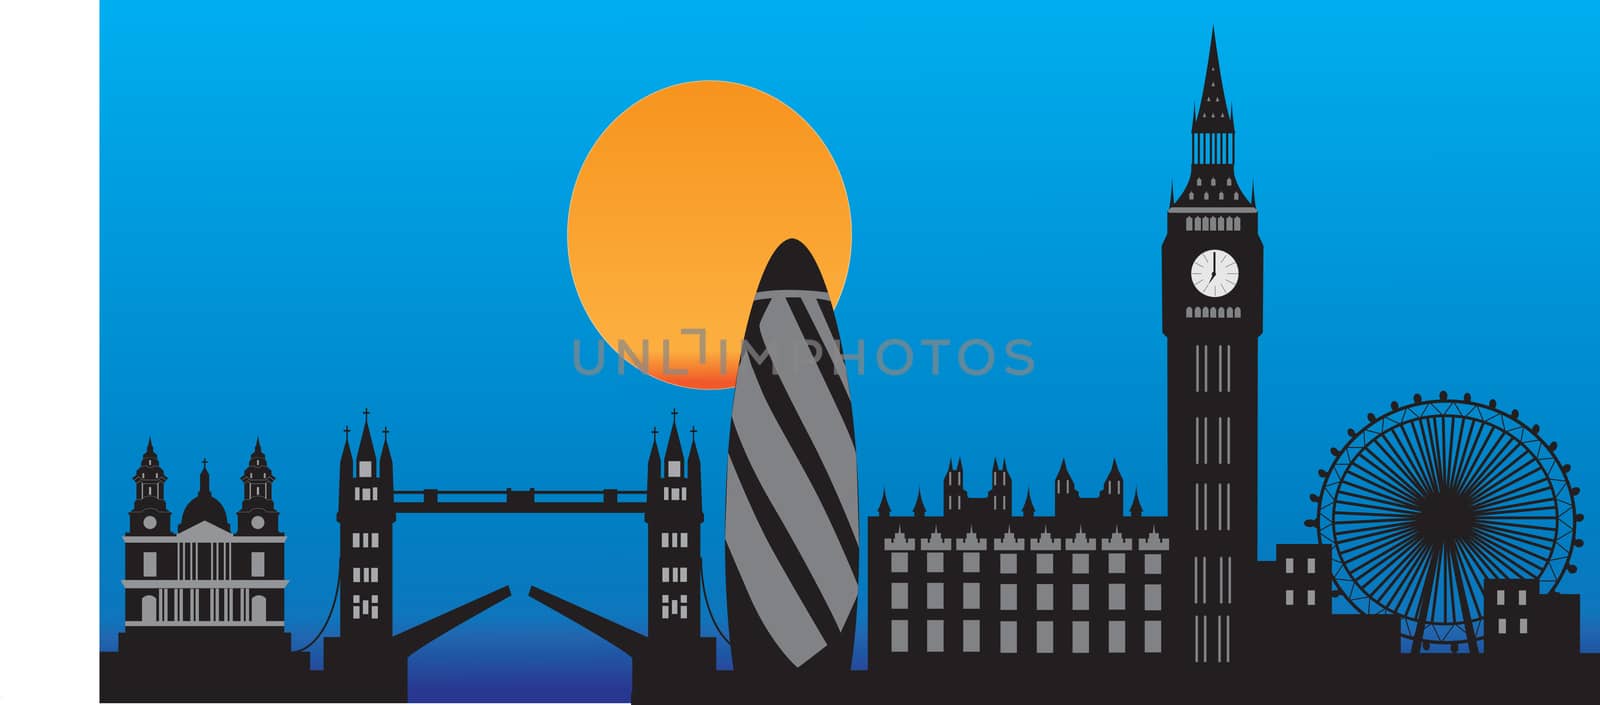 London skyline

